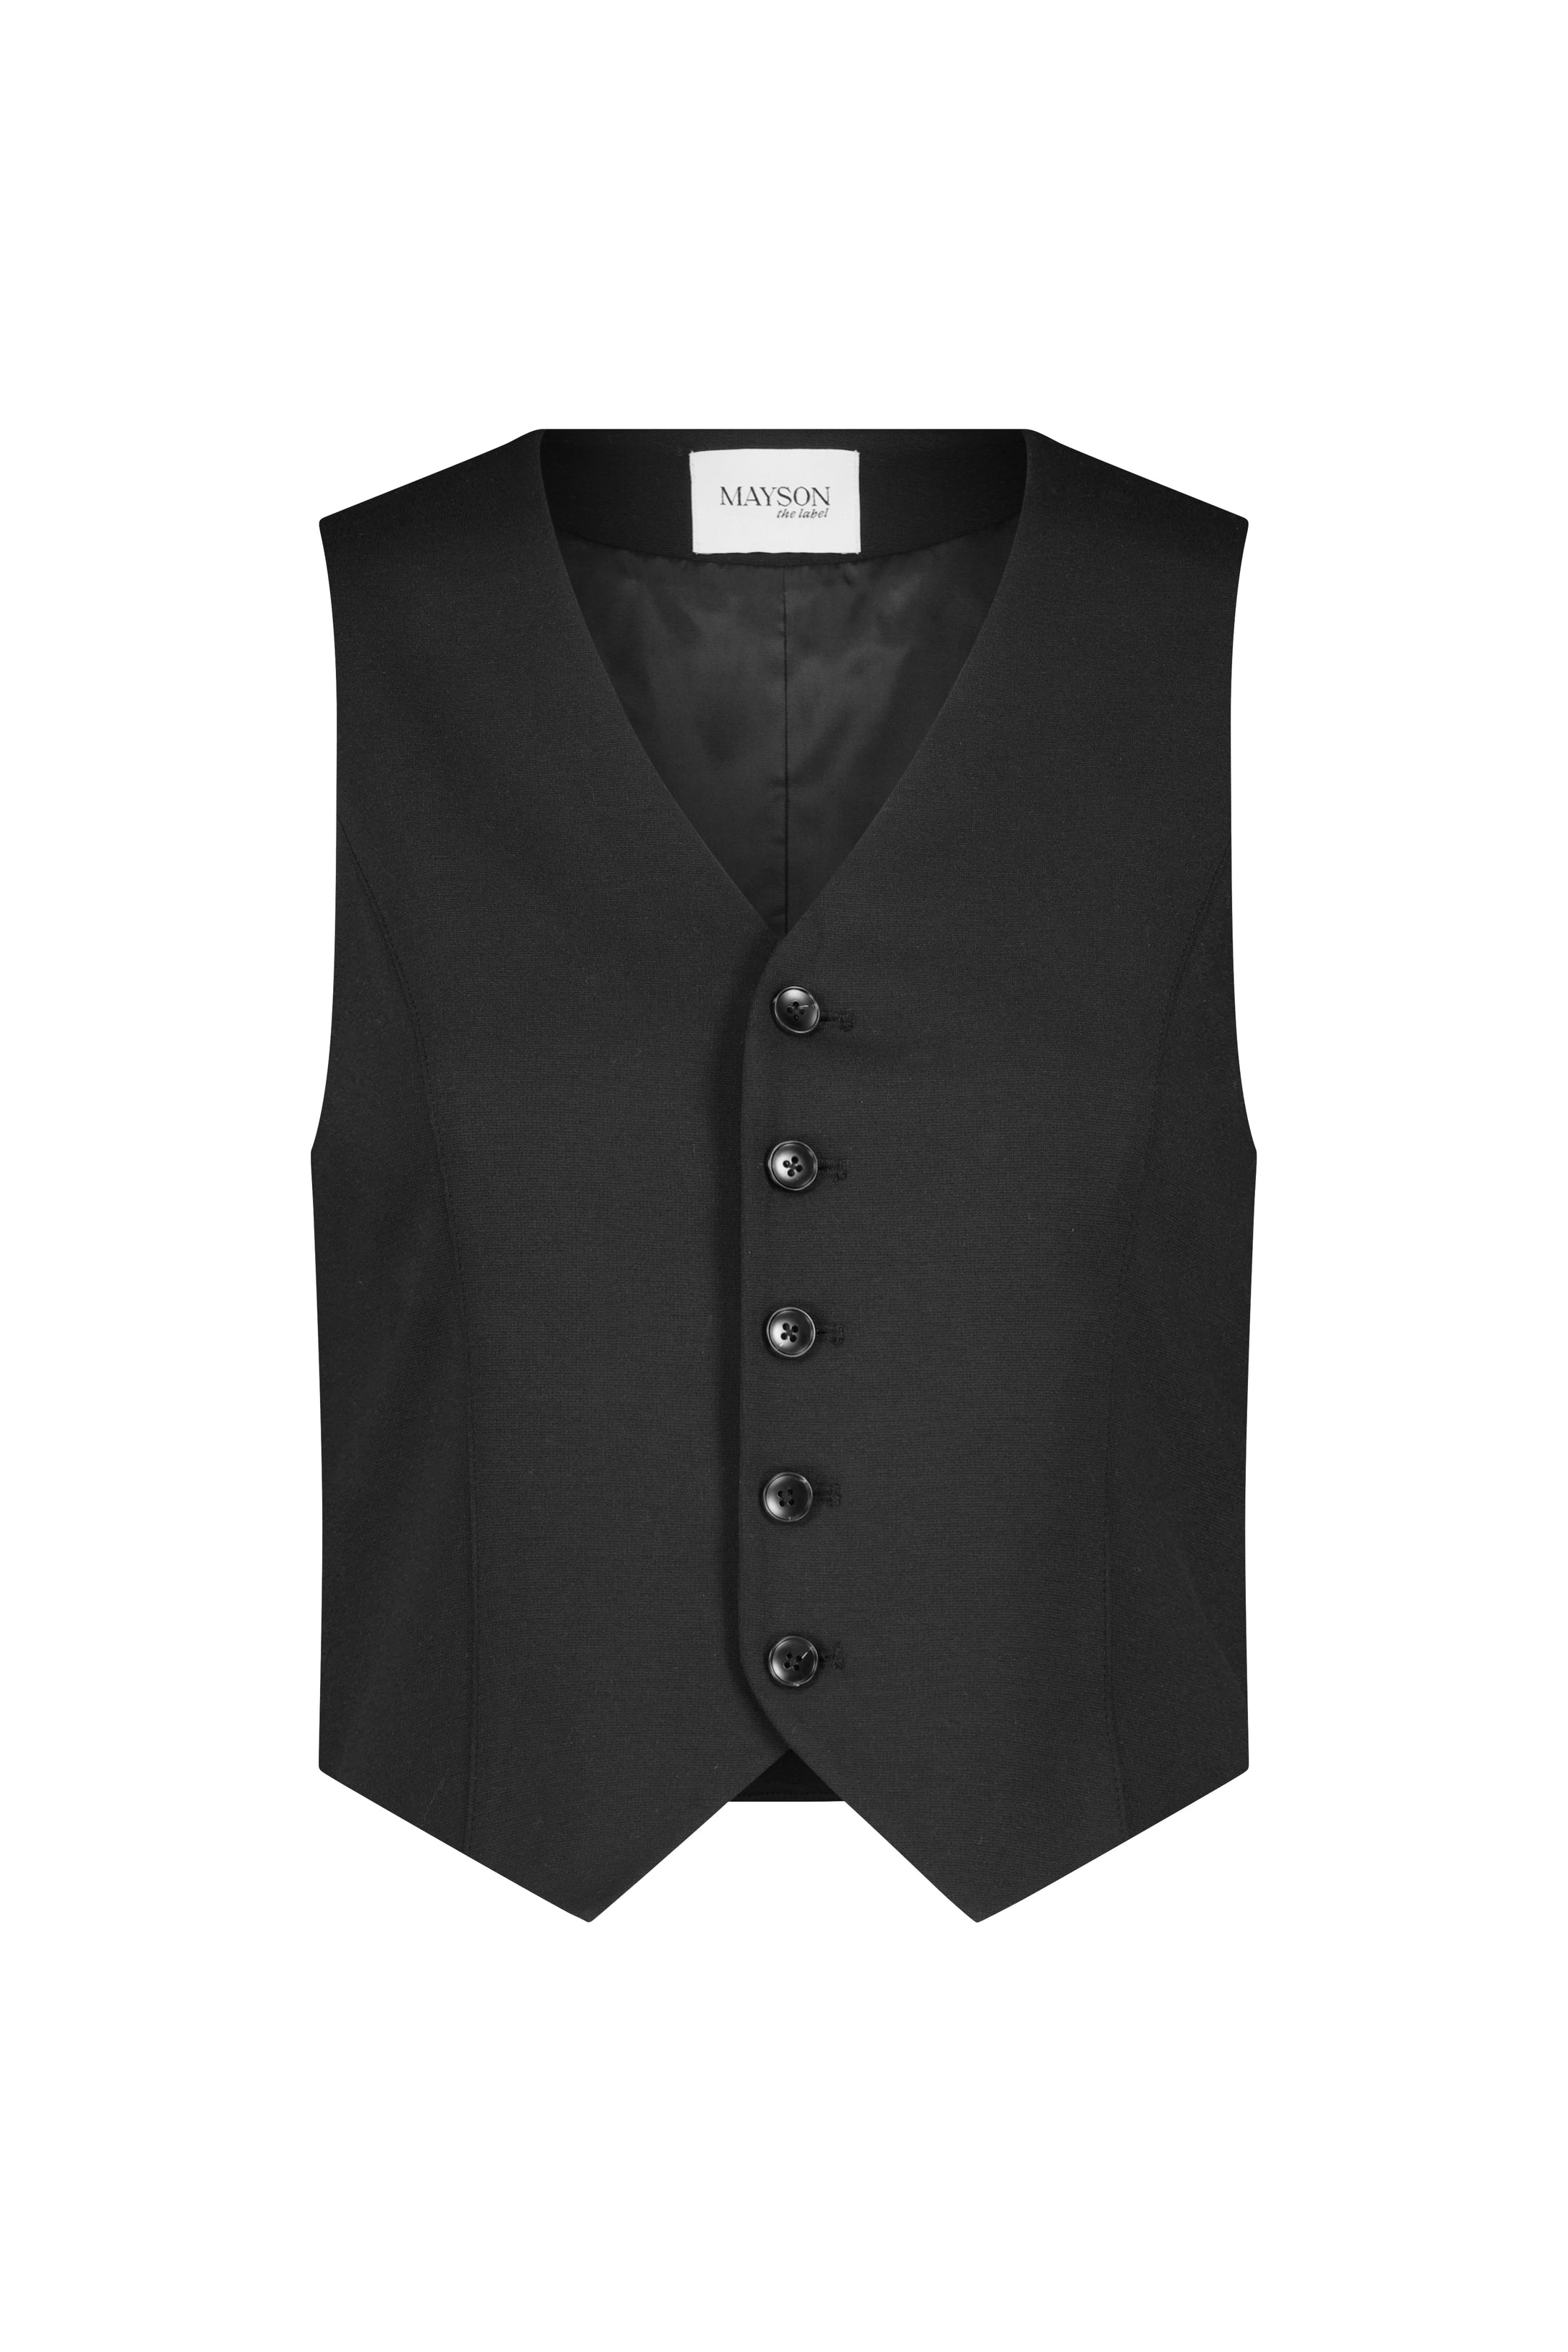 Slim-Fit Button-Front MAYSON label – the Vest